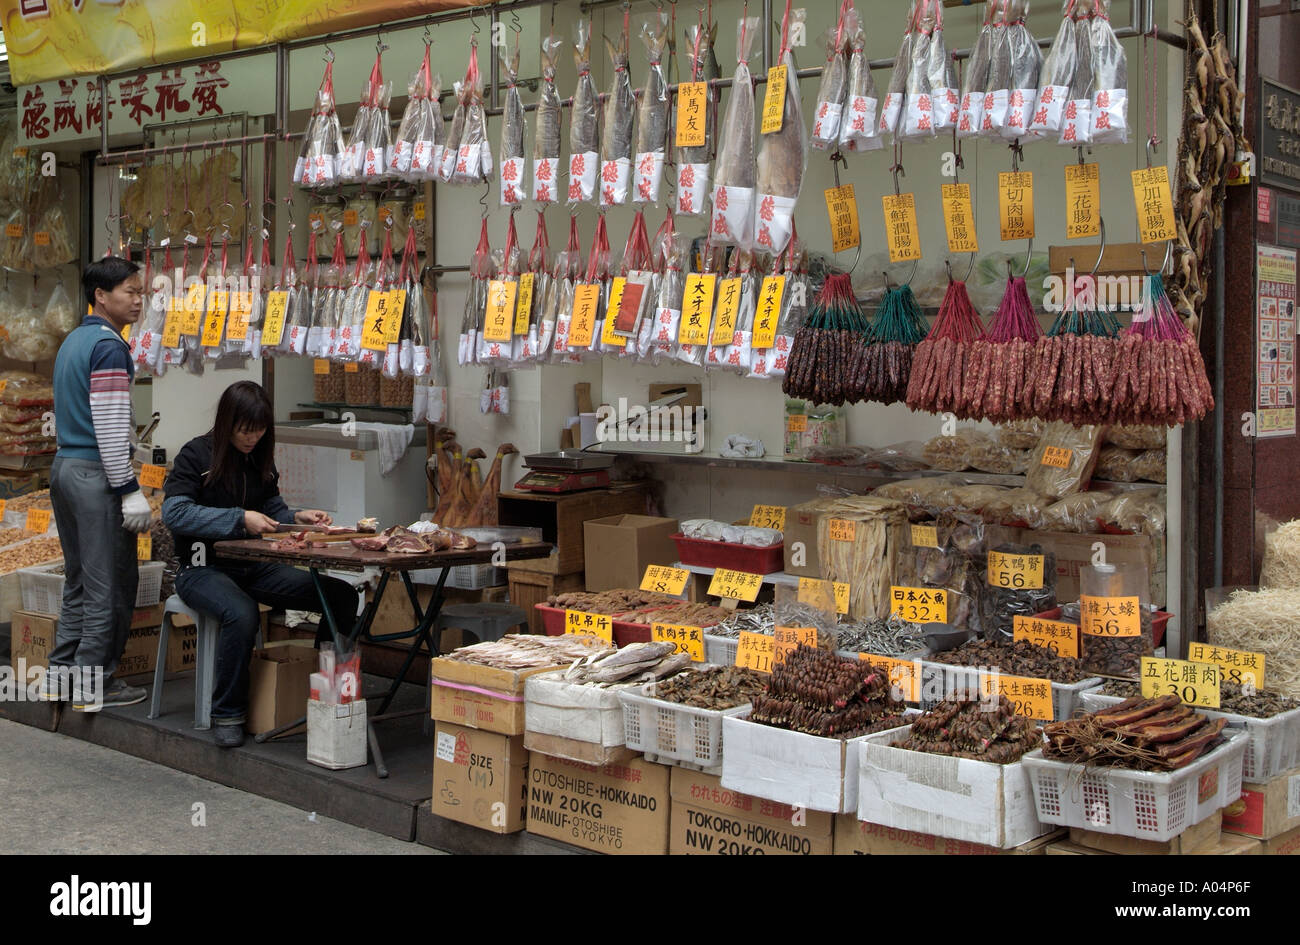 dh Des Voeux Road West SHEUNG WAN HONG KONG cinese negozio di carne conservato strada stalle carni secche vendor mercato asia preparazione di un negozio di alimenti secchi all'aperto Foto Stock